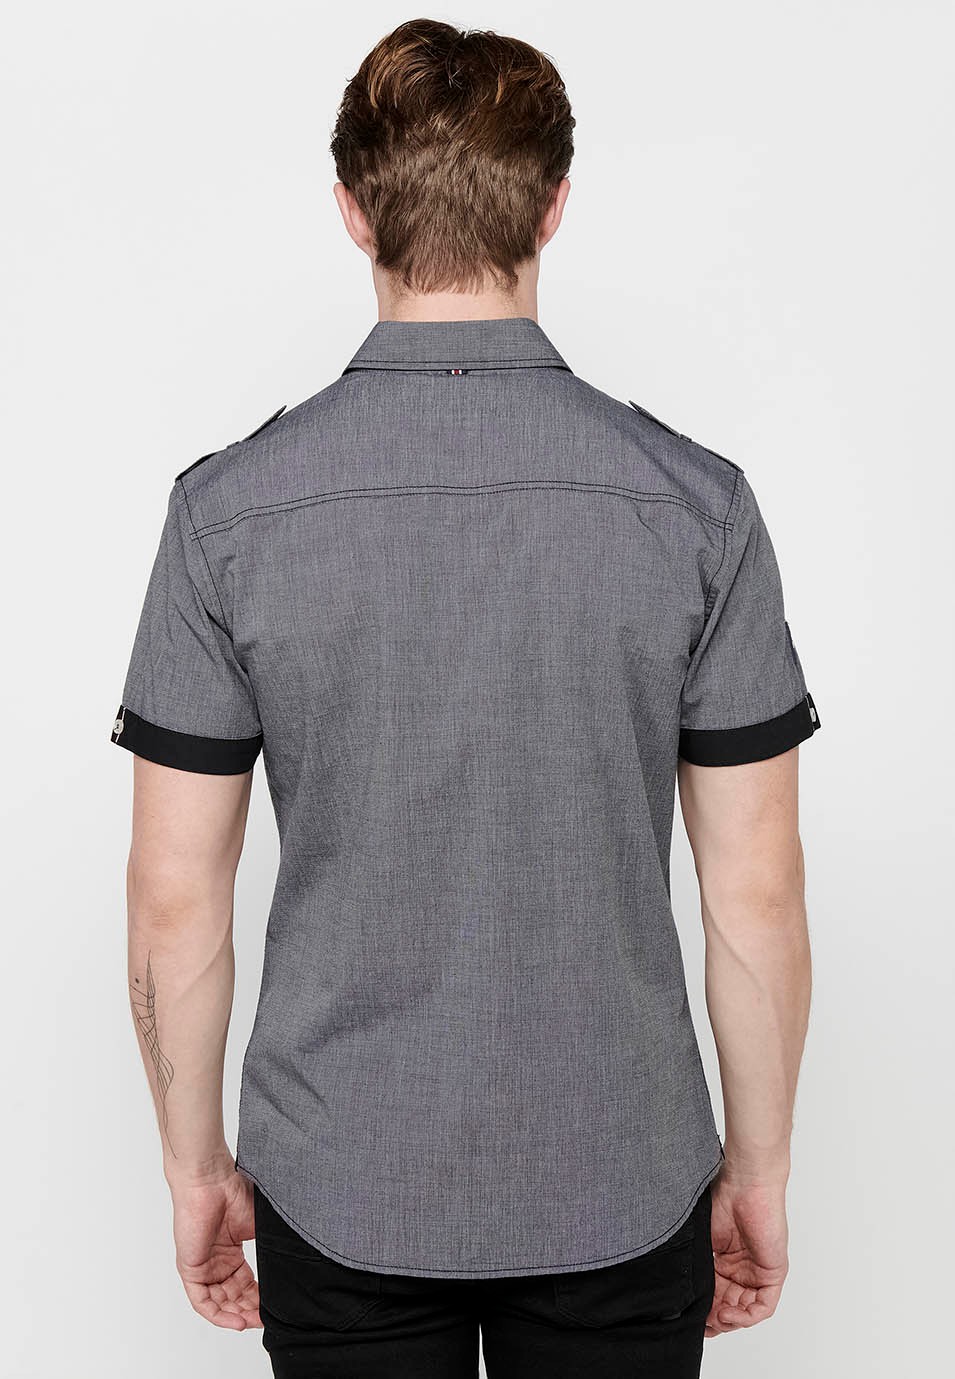 Cotton shirt, short sleeve, shoulder details, white color for men